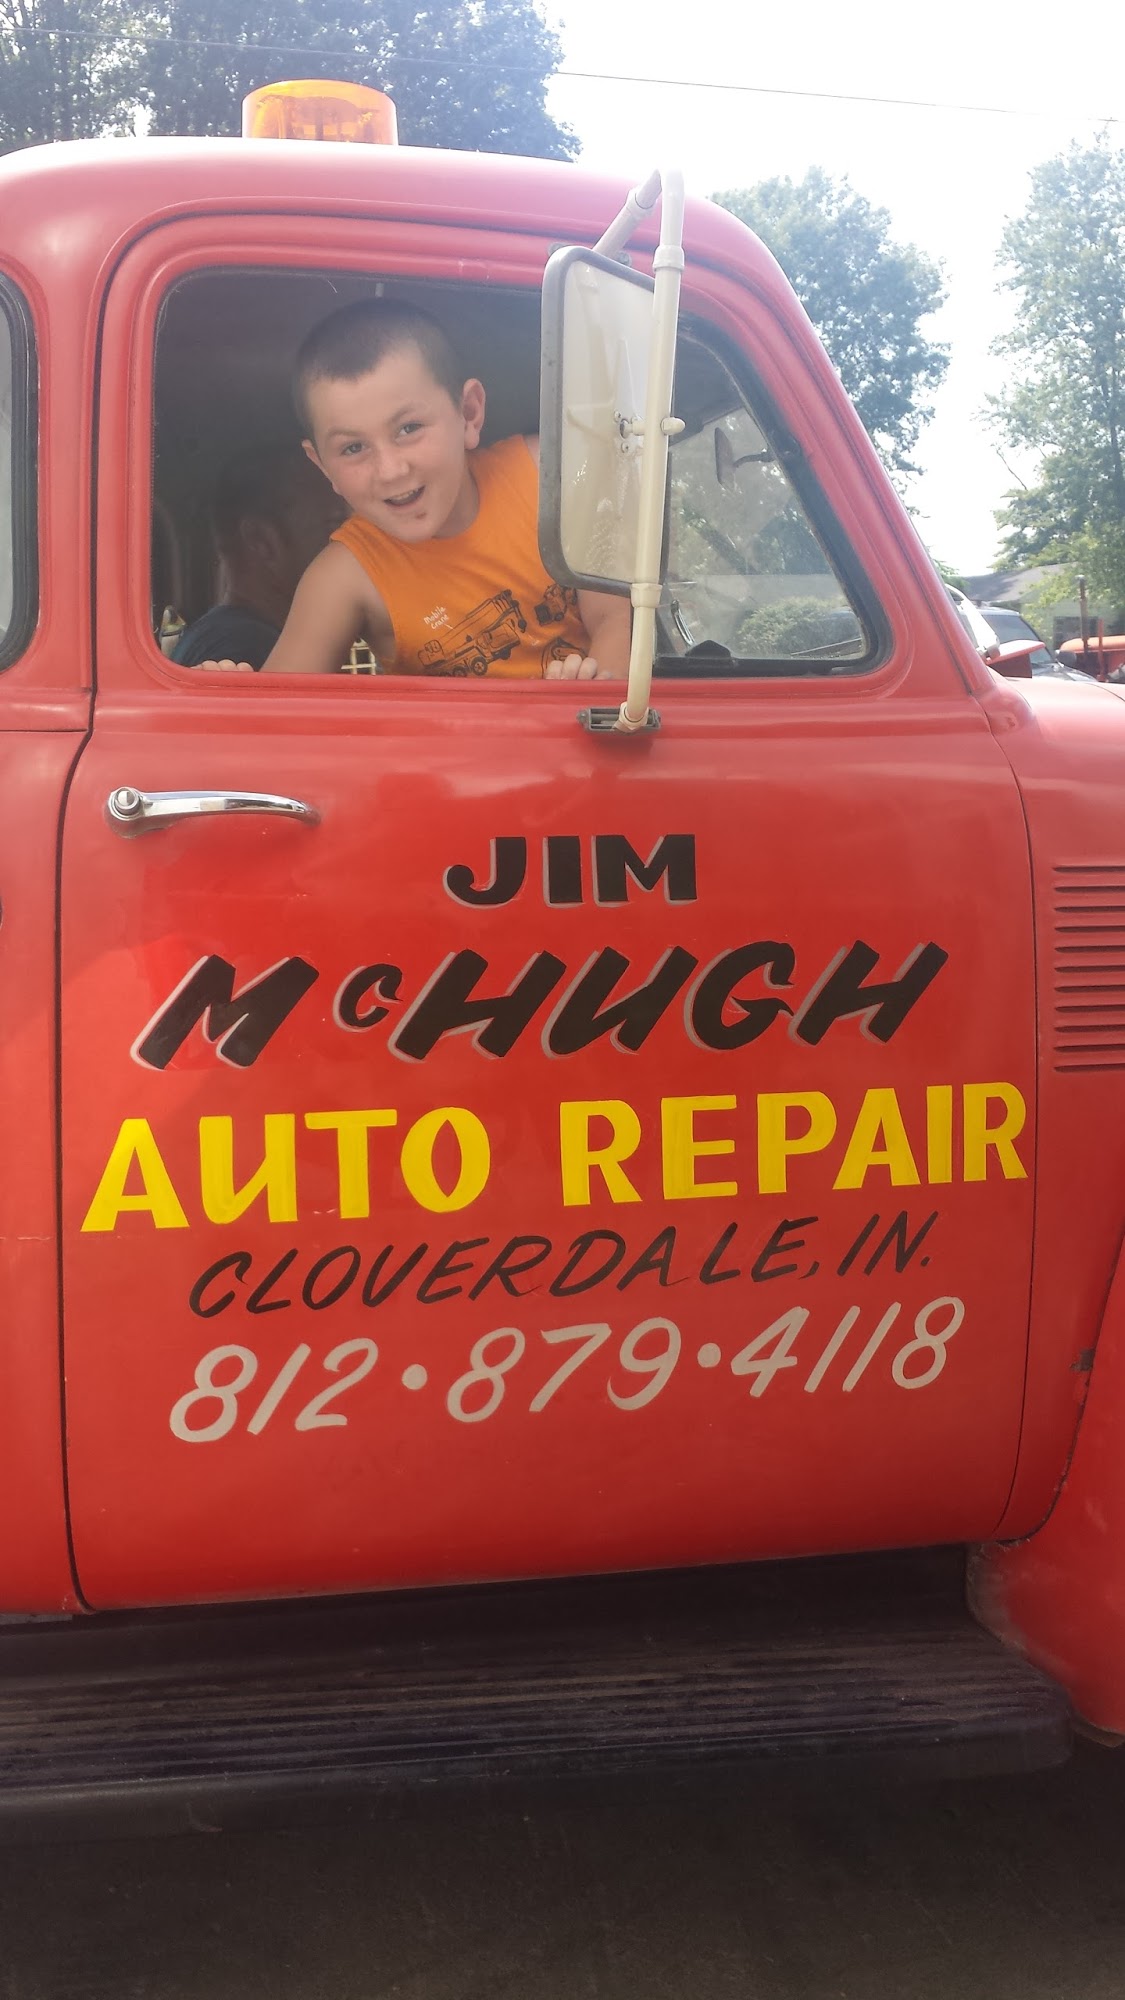 Jim Mc Hugh Auto Repair